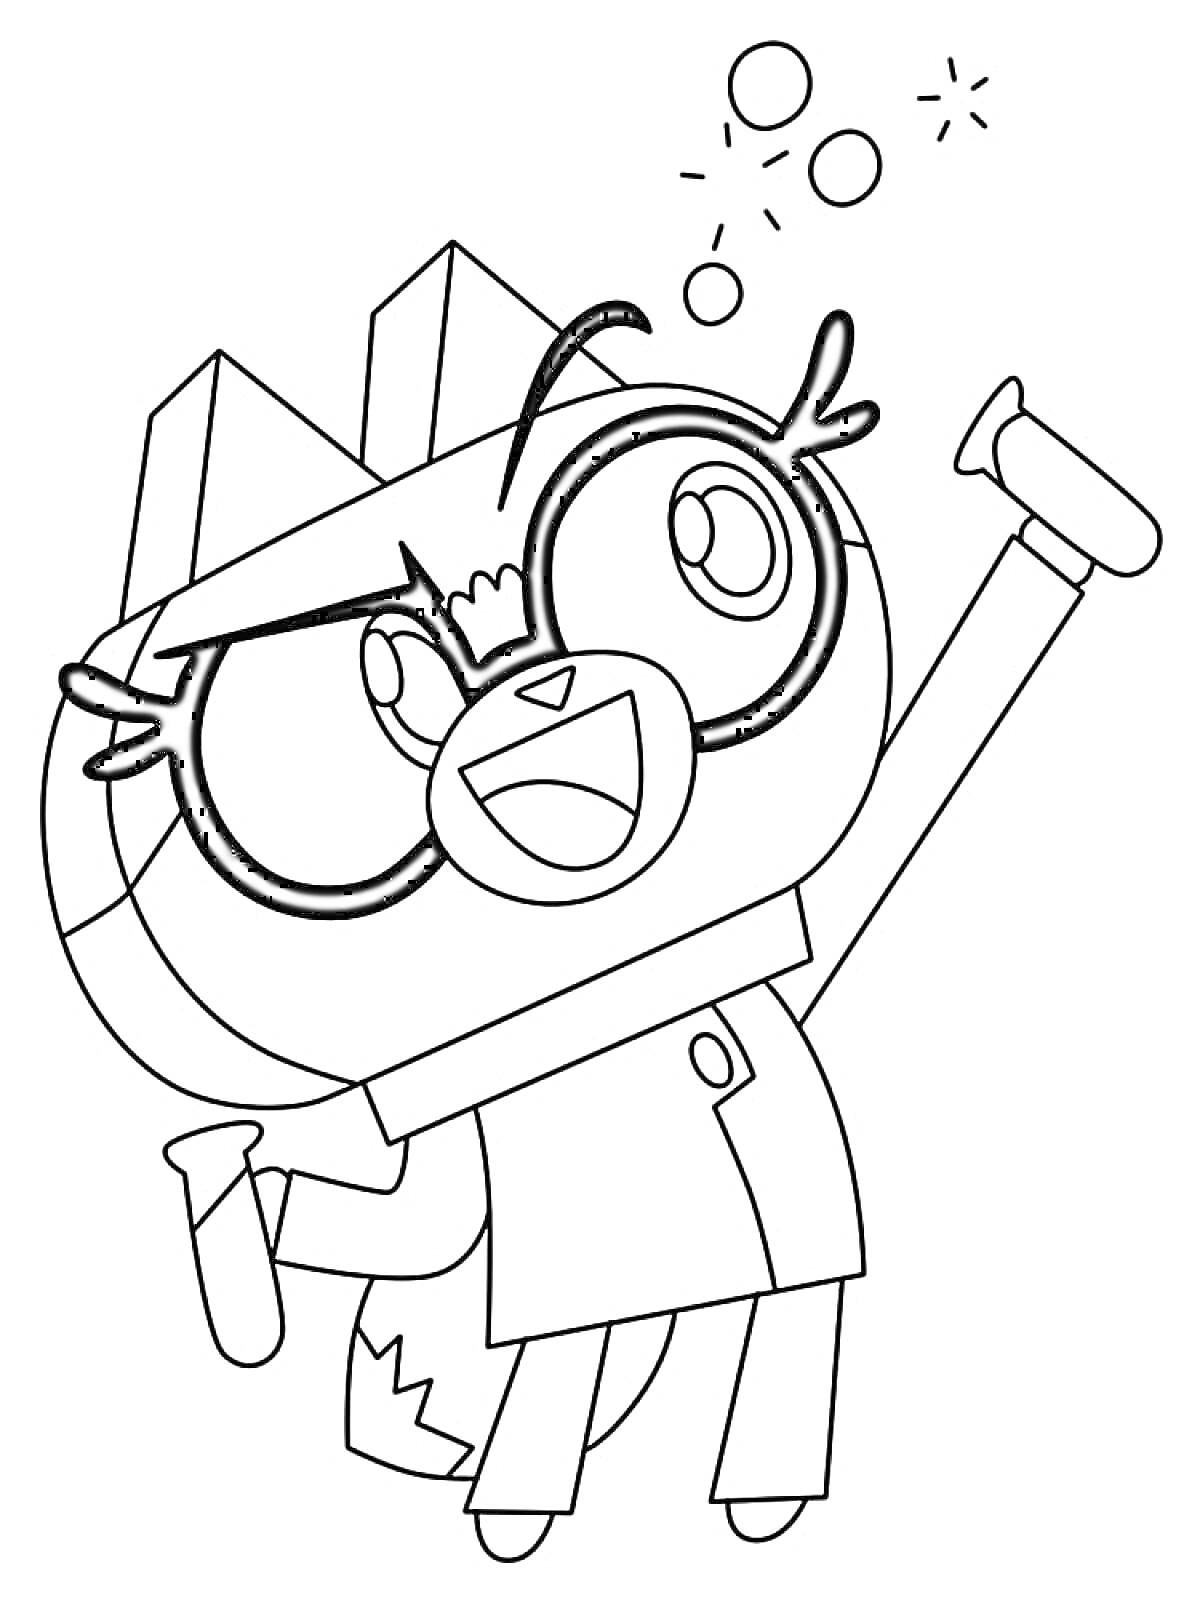 Юникитти в лабораторном халате с очками, держащая две пробирки, с пузырьками над головой